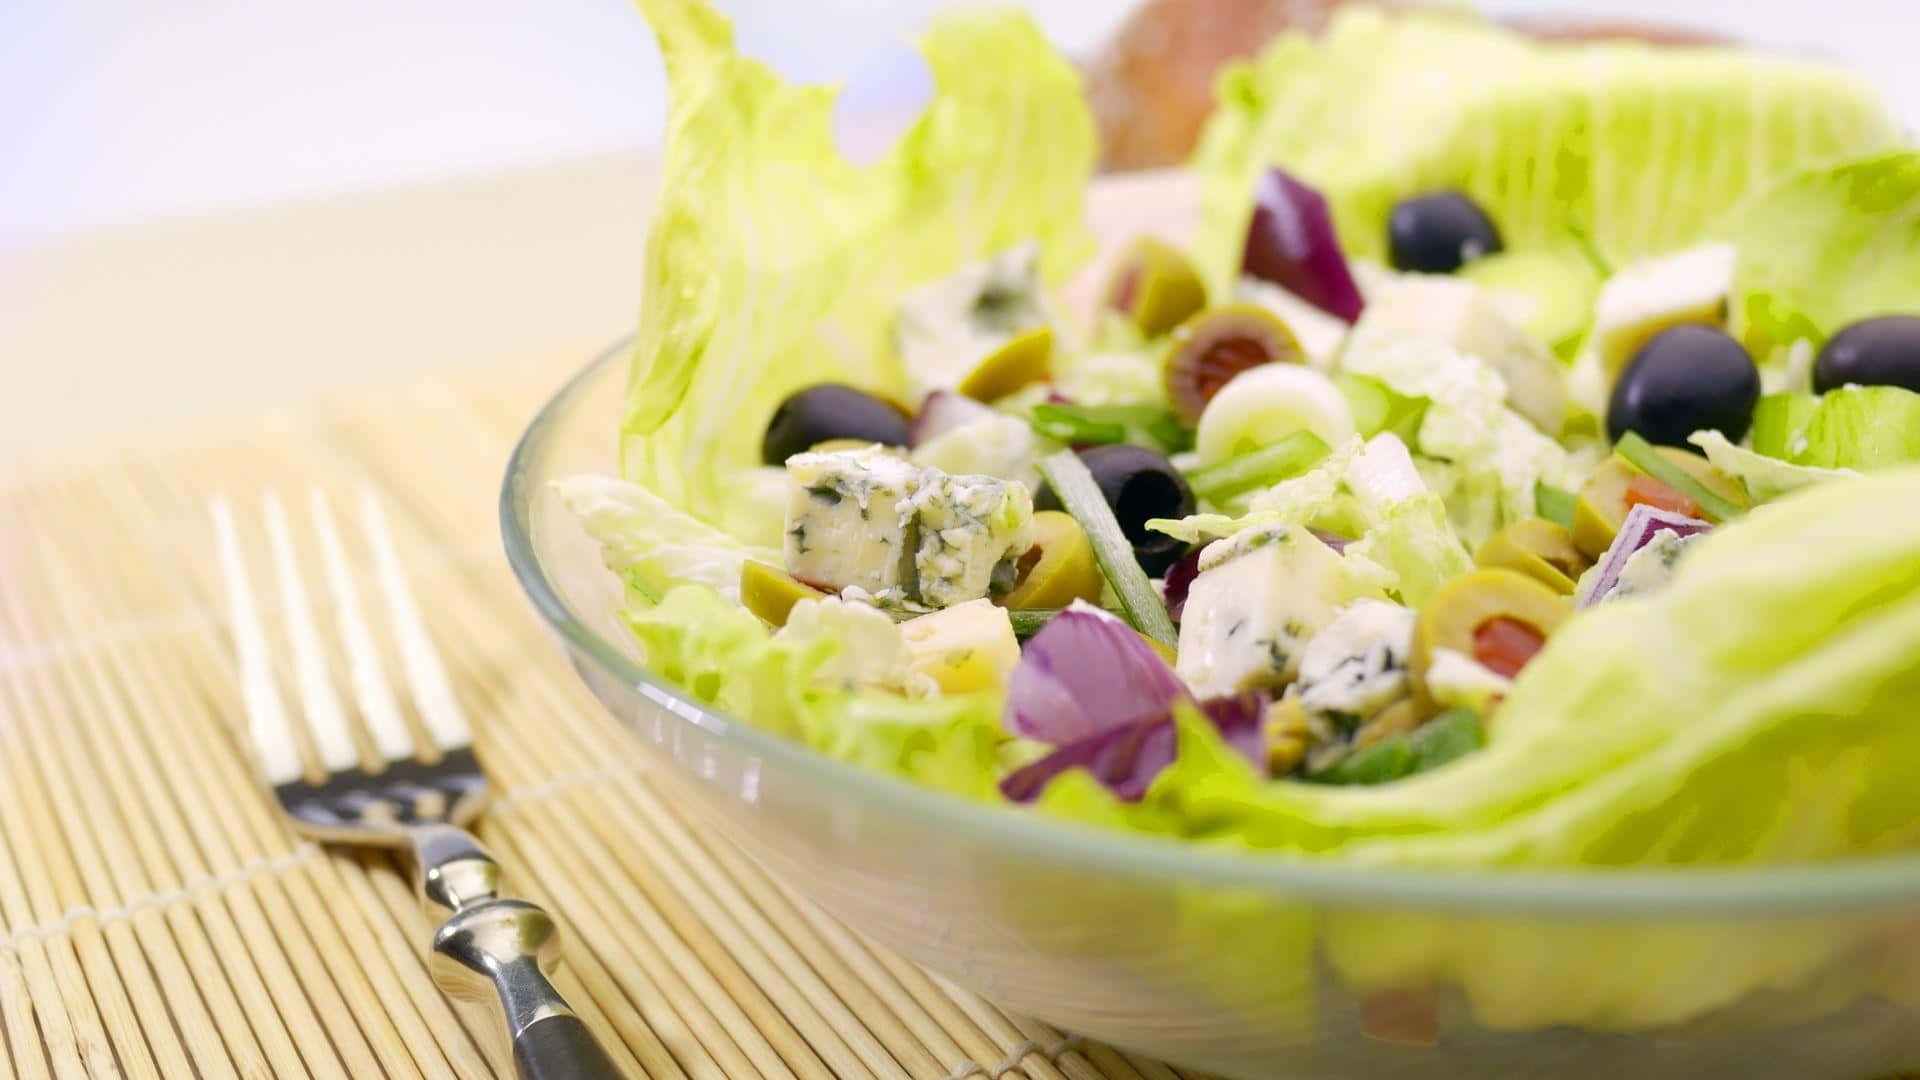 Fresh and nutritious garden salad